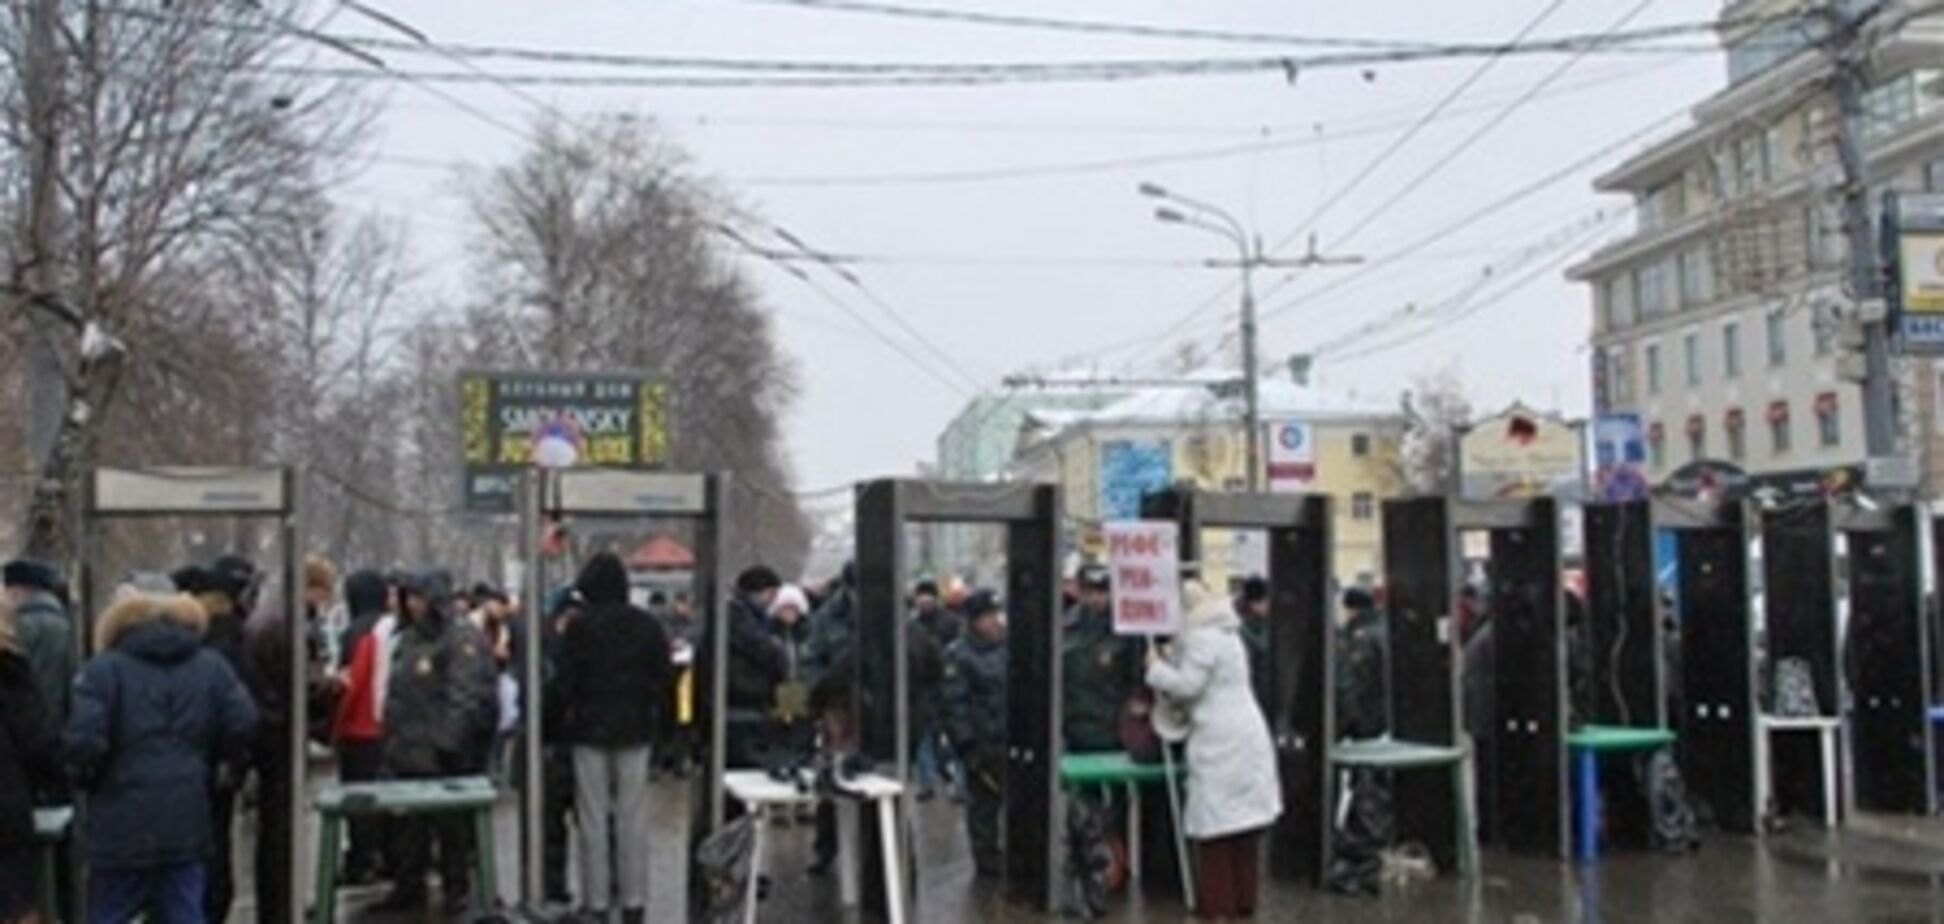 Протести в Москві пройшли без пригод - поліція